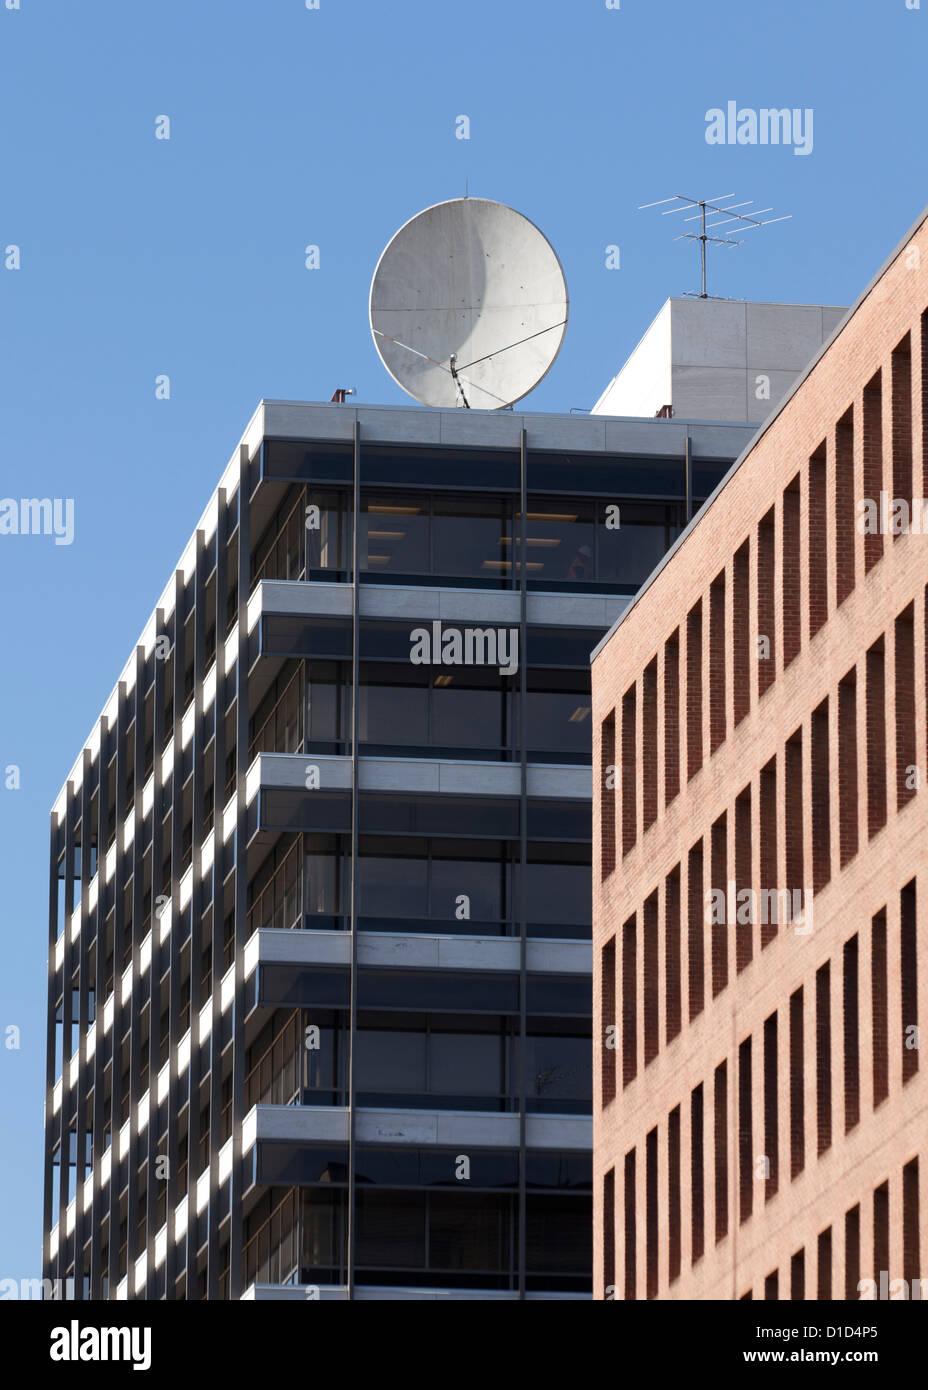 Antenne satellite de communications, au-dessus du bâtiment Banque D'Images